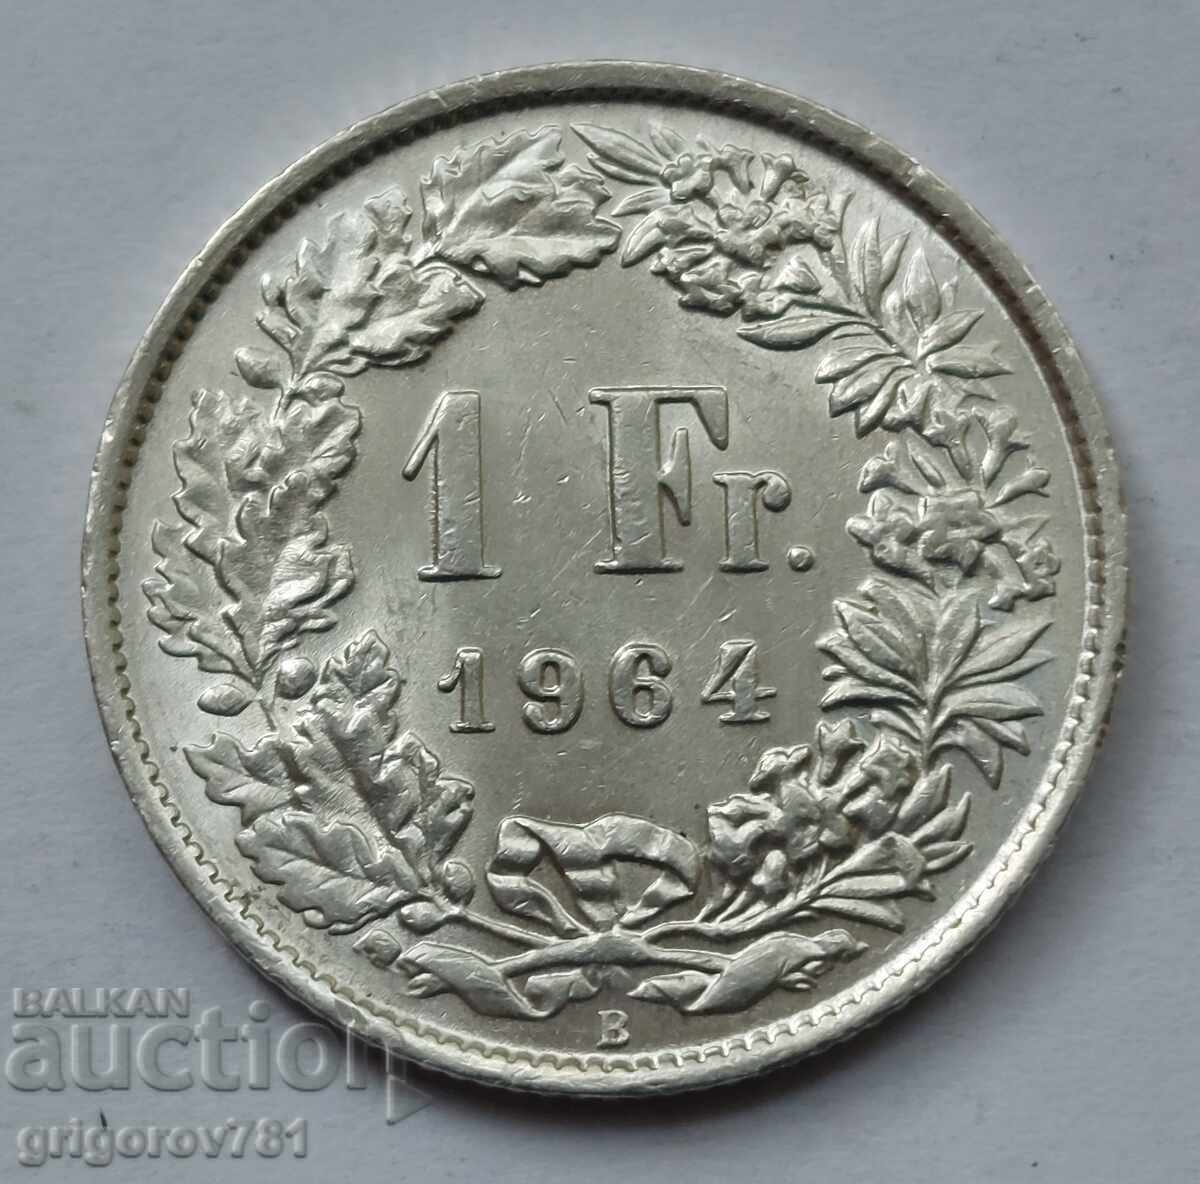 Ασημένιο 1 Φράγκο Ελβετία 1964 Β - Ασημένιο νόμισμα #2